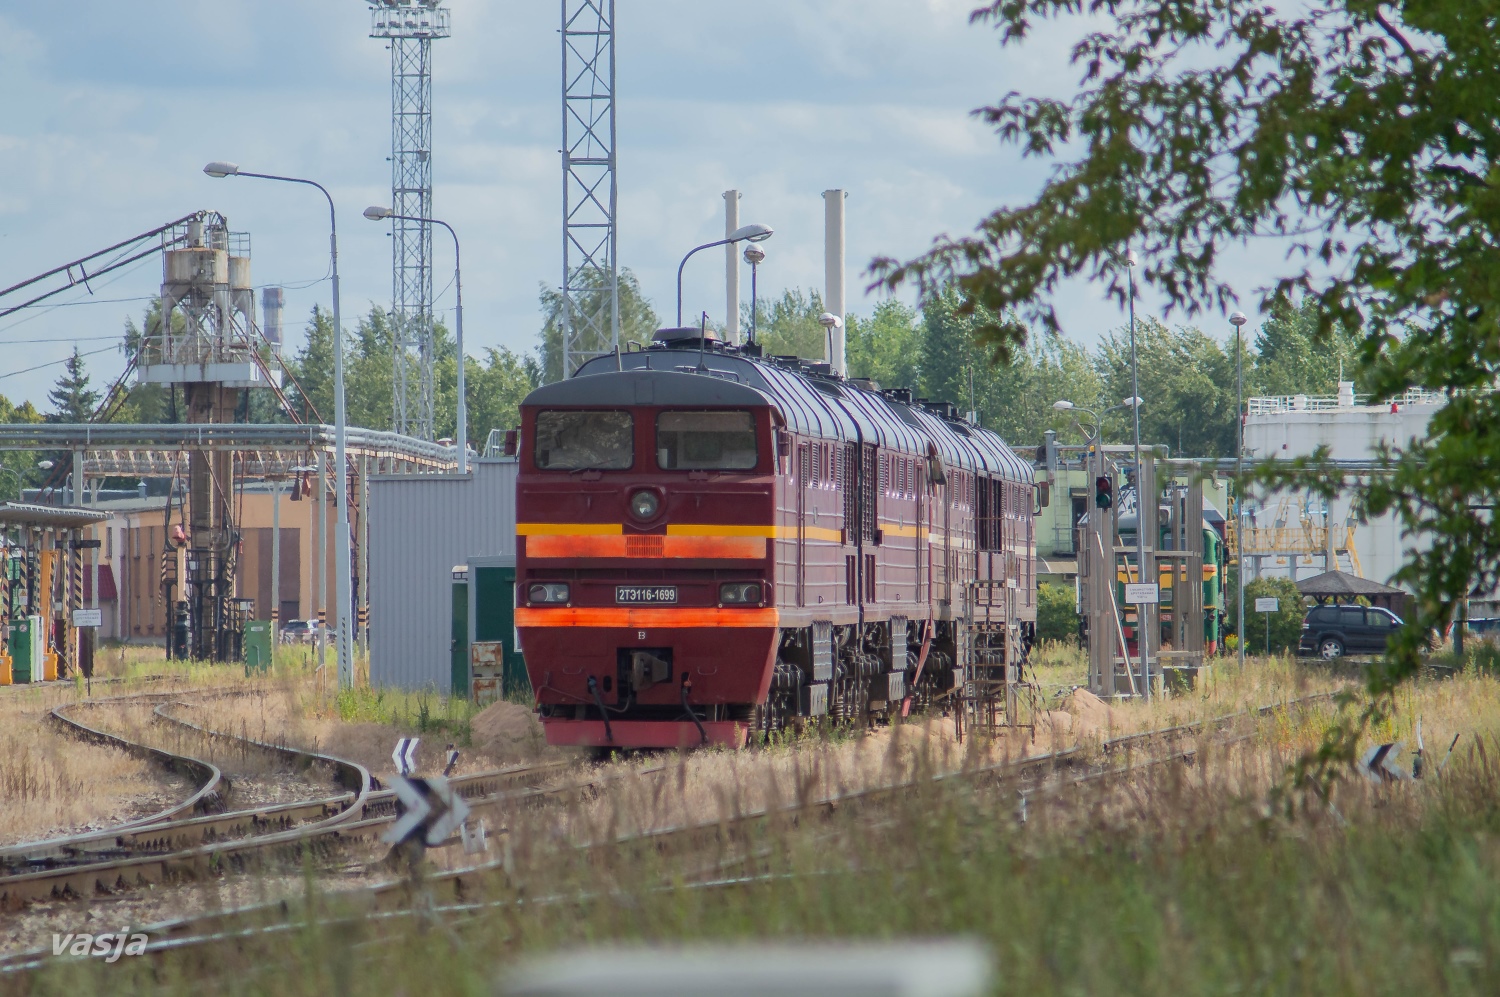 2ТЭ116-1699; Фотозарисовки (Латвийская железная дорога)